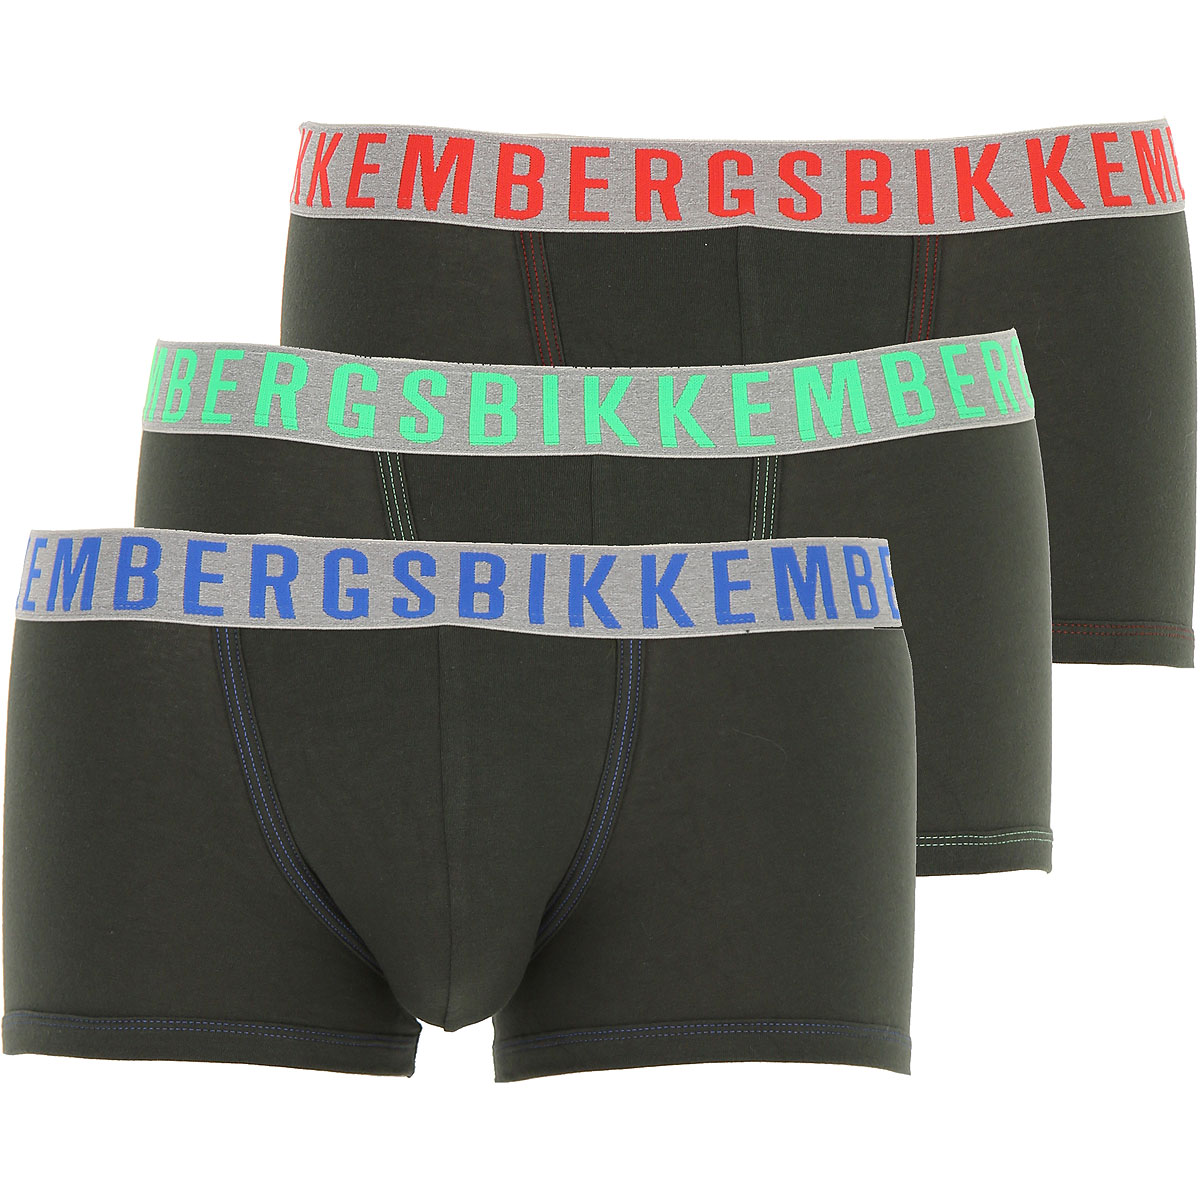 Dirk Bikkembergs Boxer Shorts für Herren, Unterhose, Short, Boxer Günstig im Outlet Sale, 3 Pack, Dunkel Militärgrün, Baumwolle, 2017, L S XL